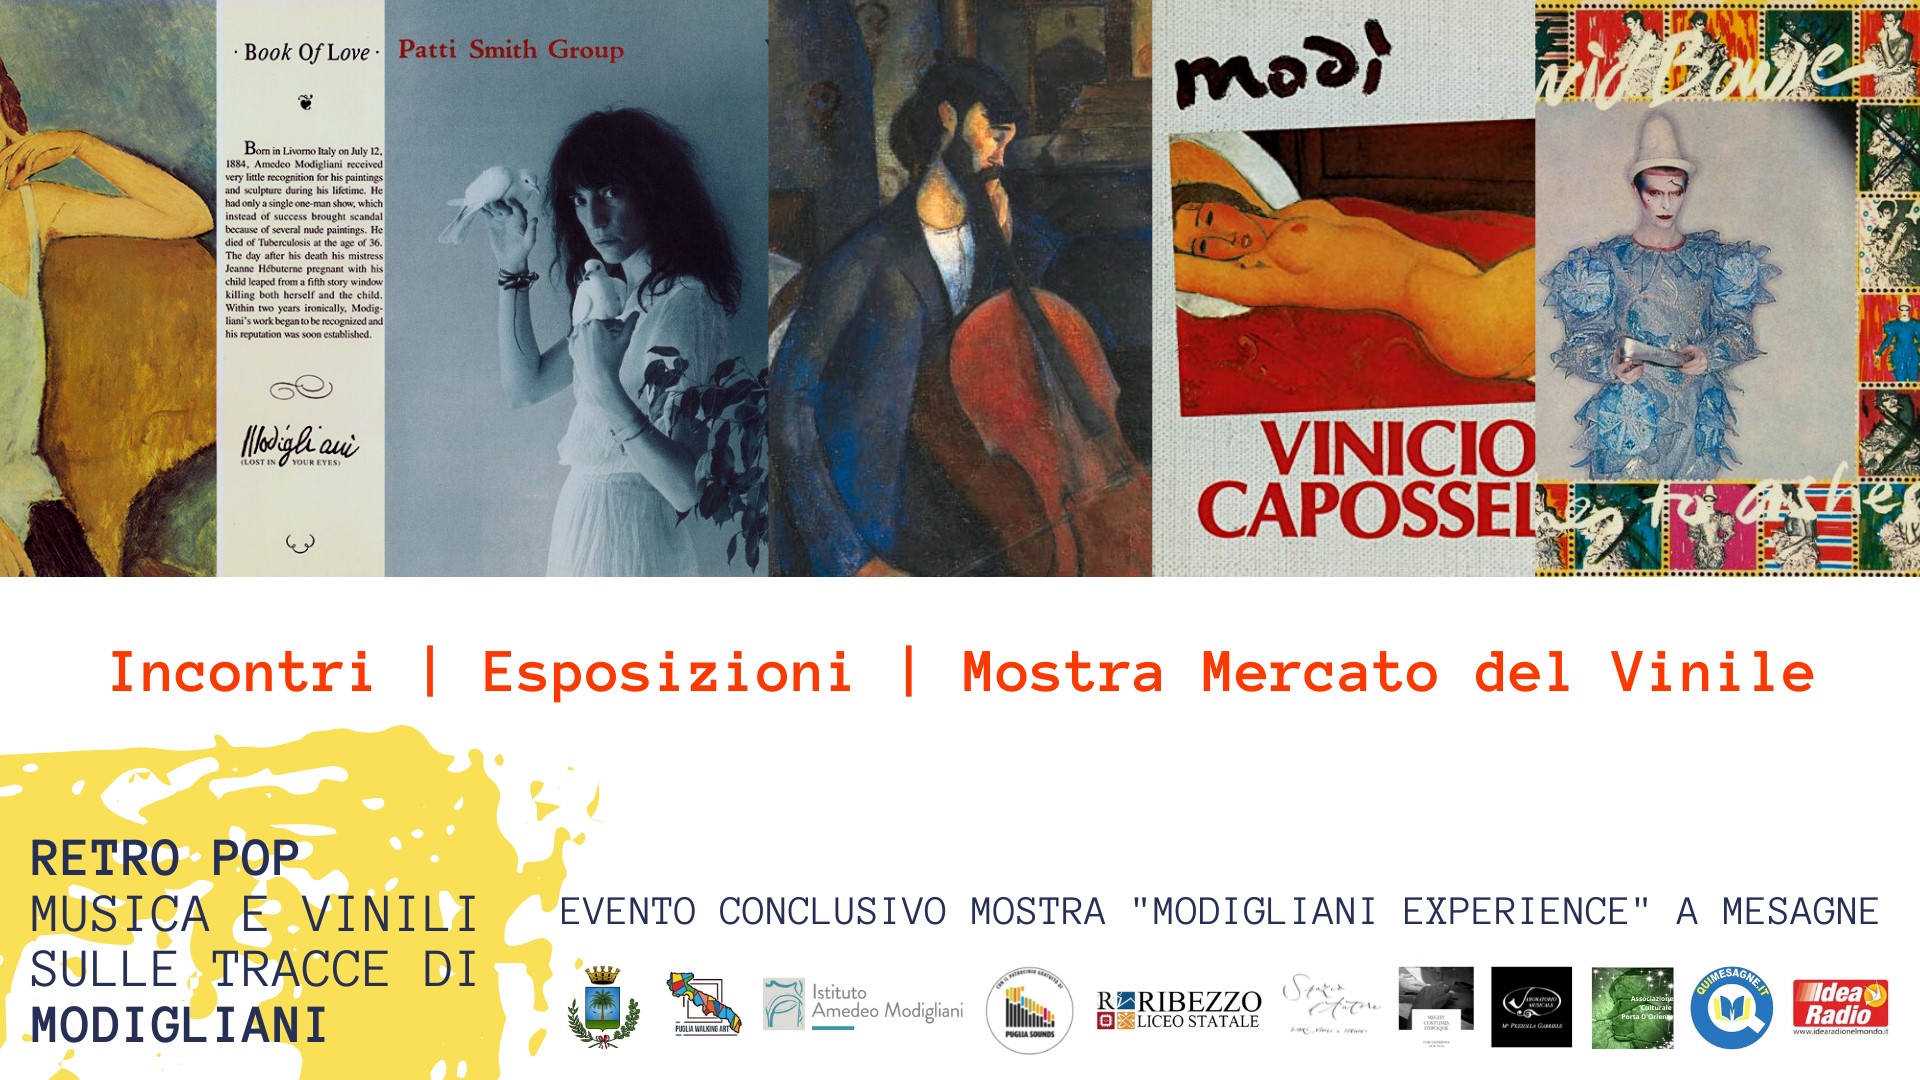 A Mesagne conferenza ed evento finali del Modigliani Experience